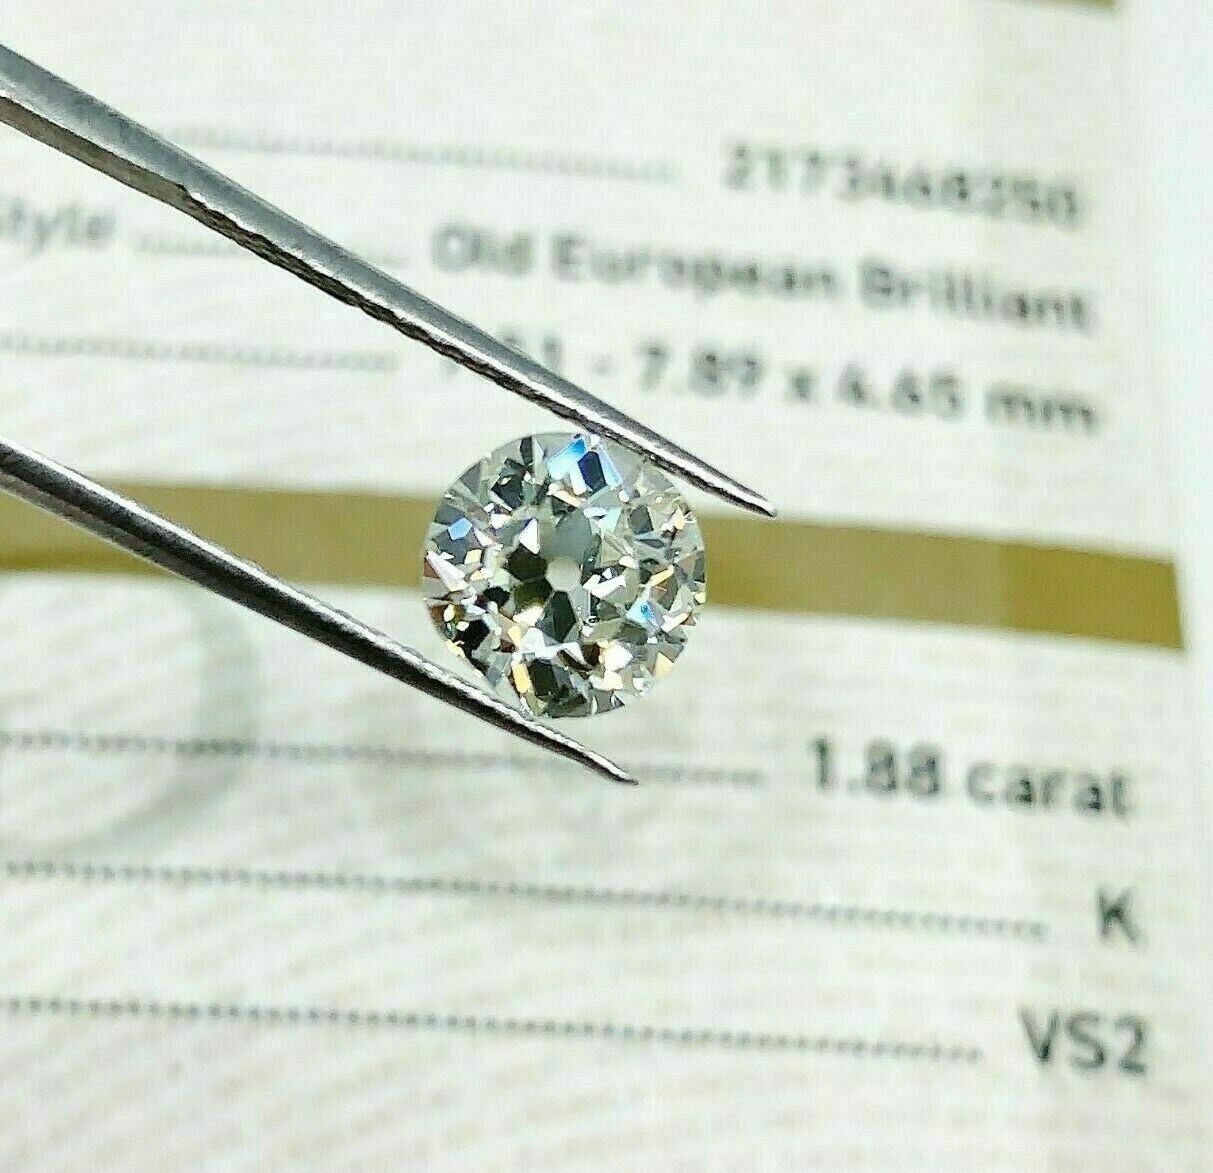 Loose GIA Diamond 1.88 Carats GIA Old European Cut Diamond GIA Certified K VS2